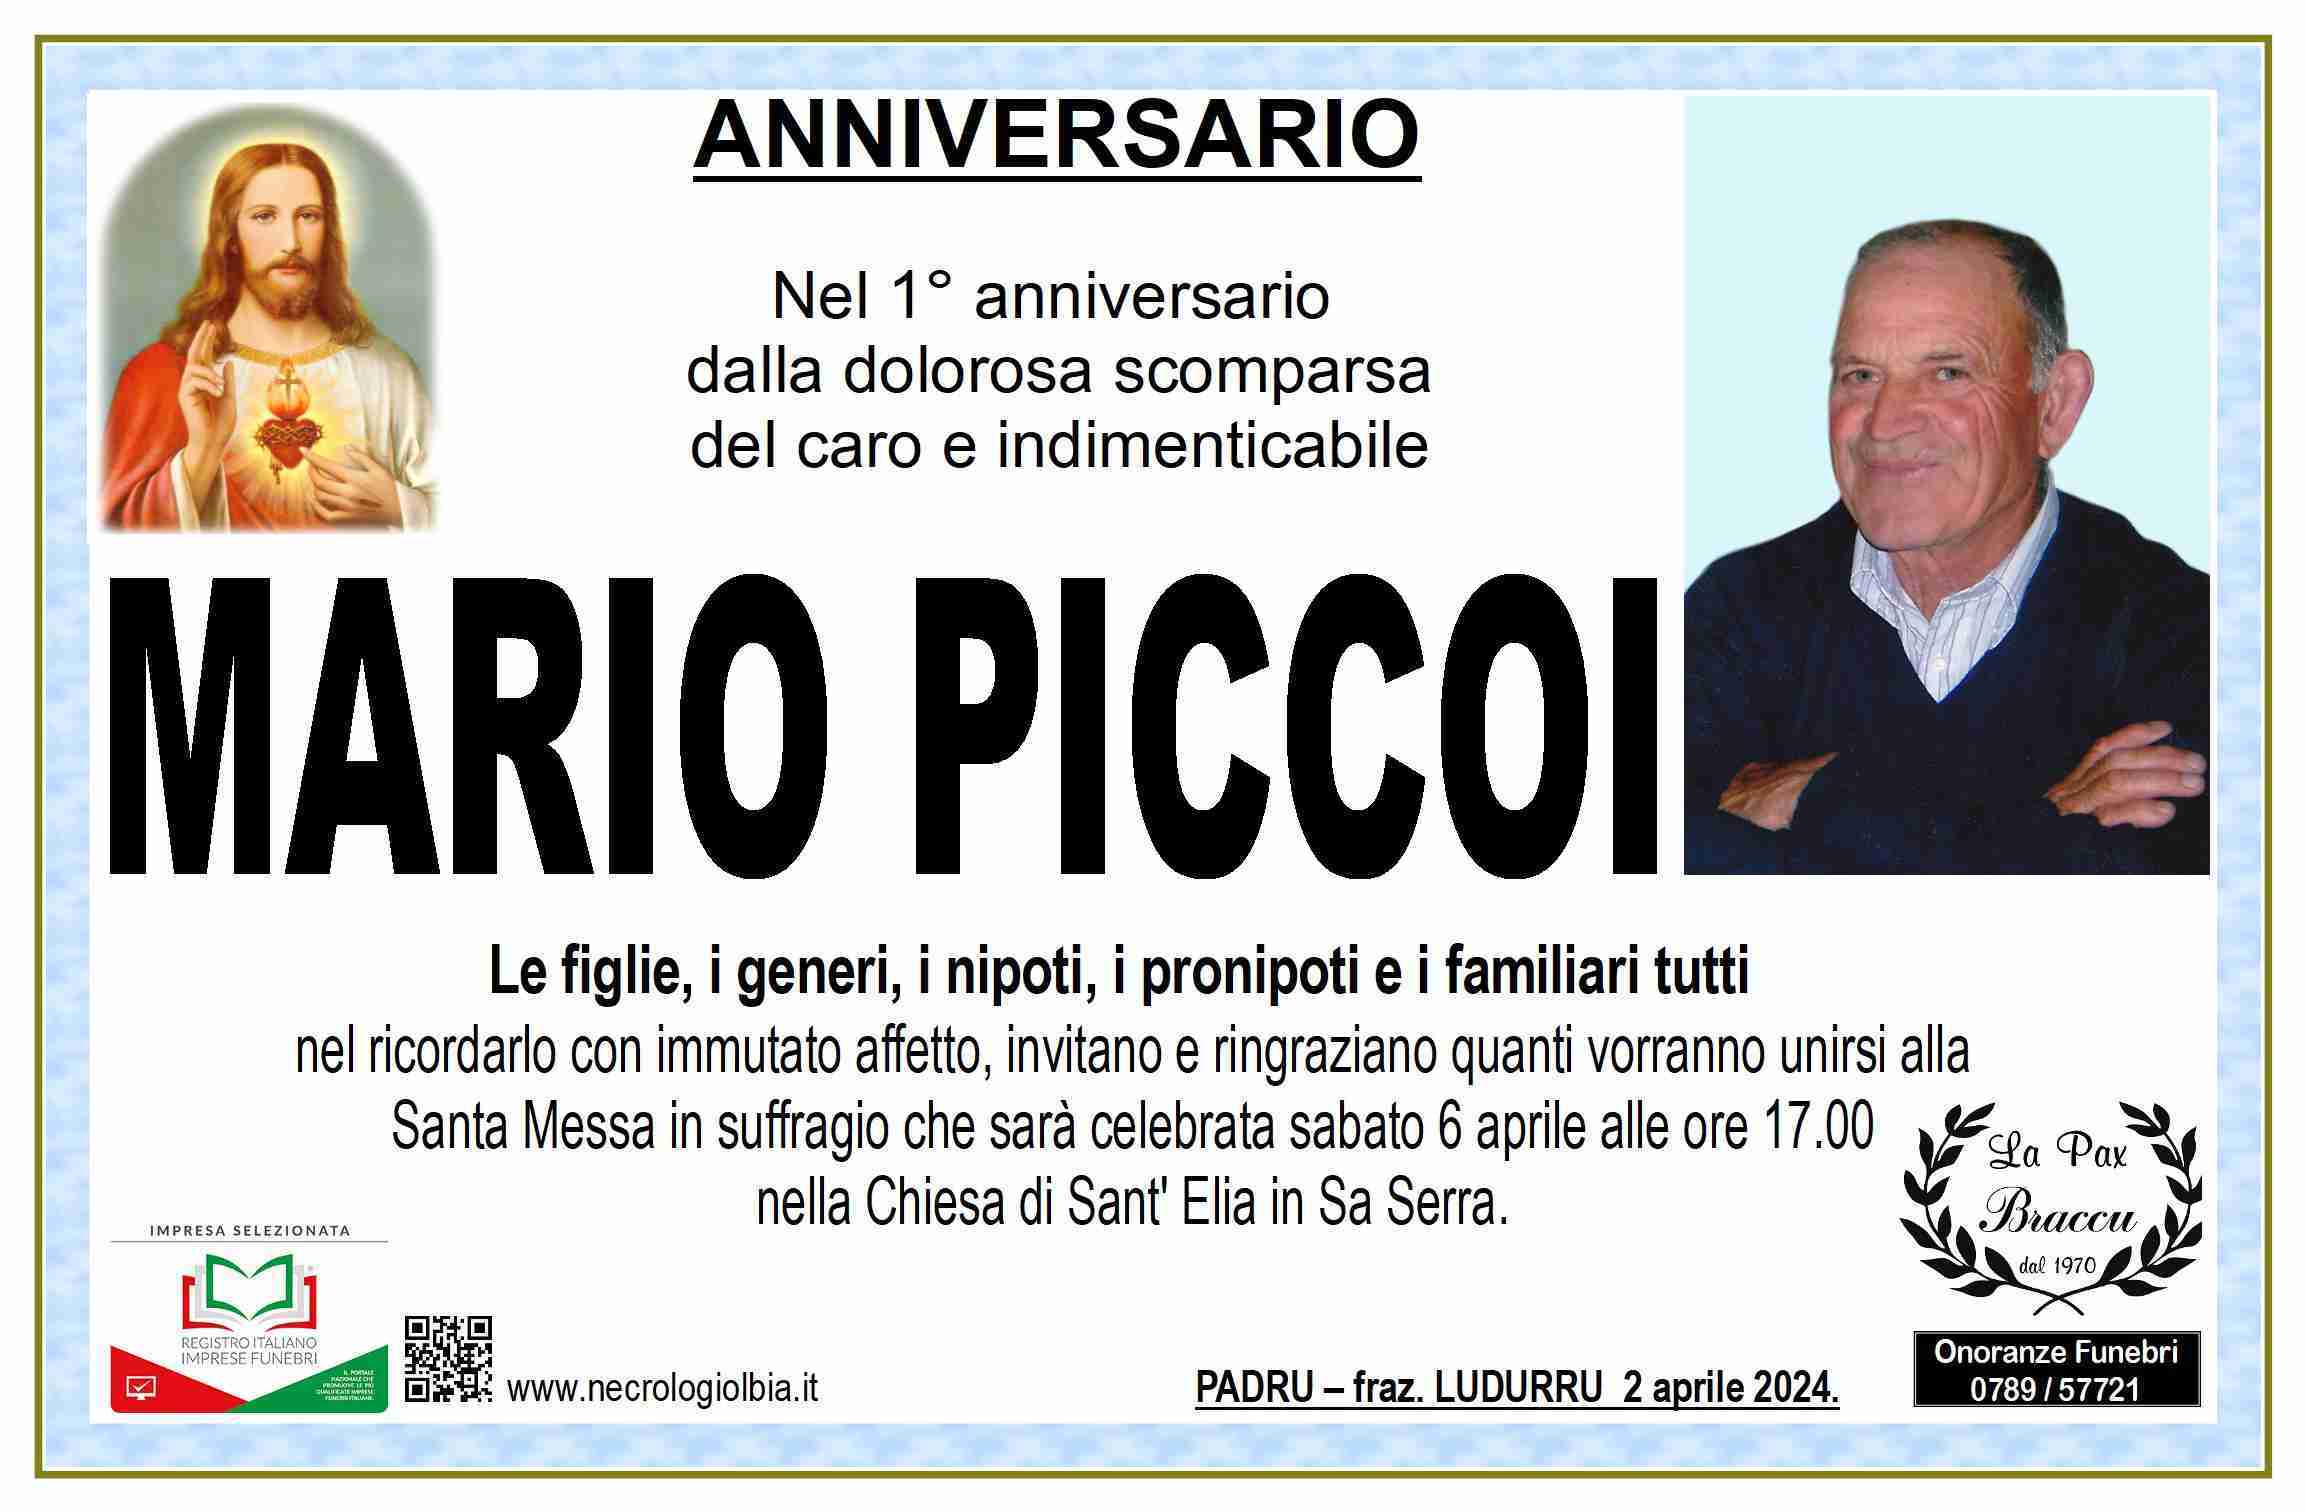 Mario Piccoi